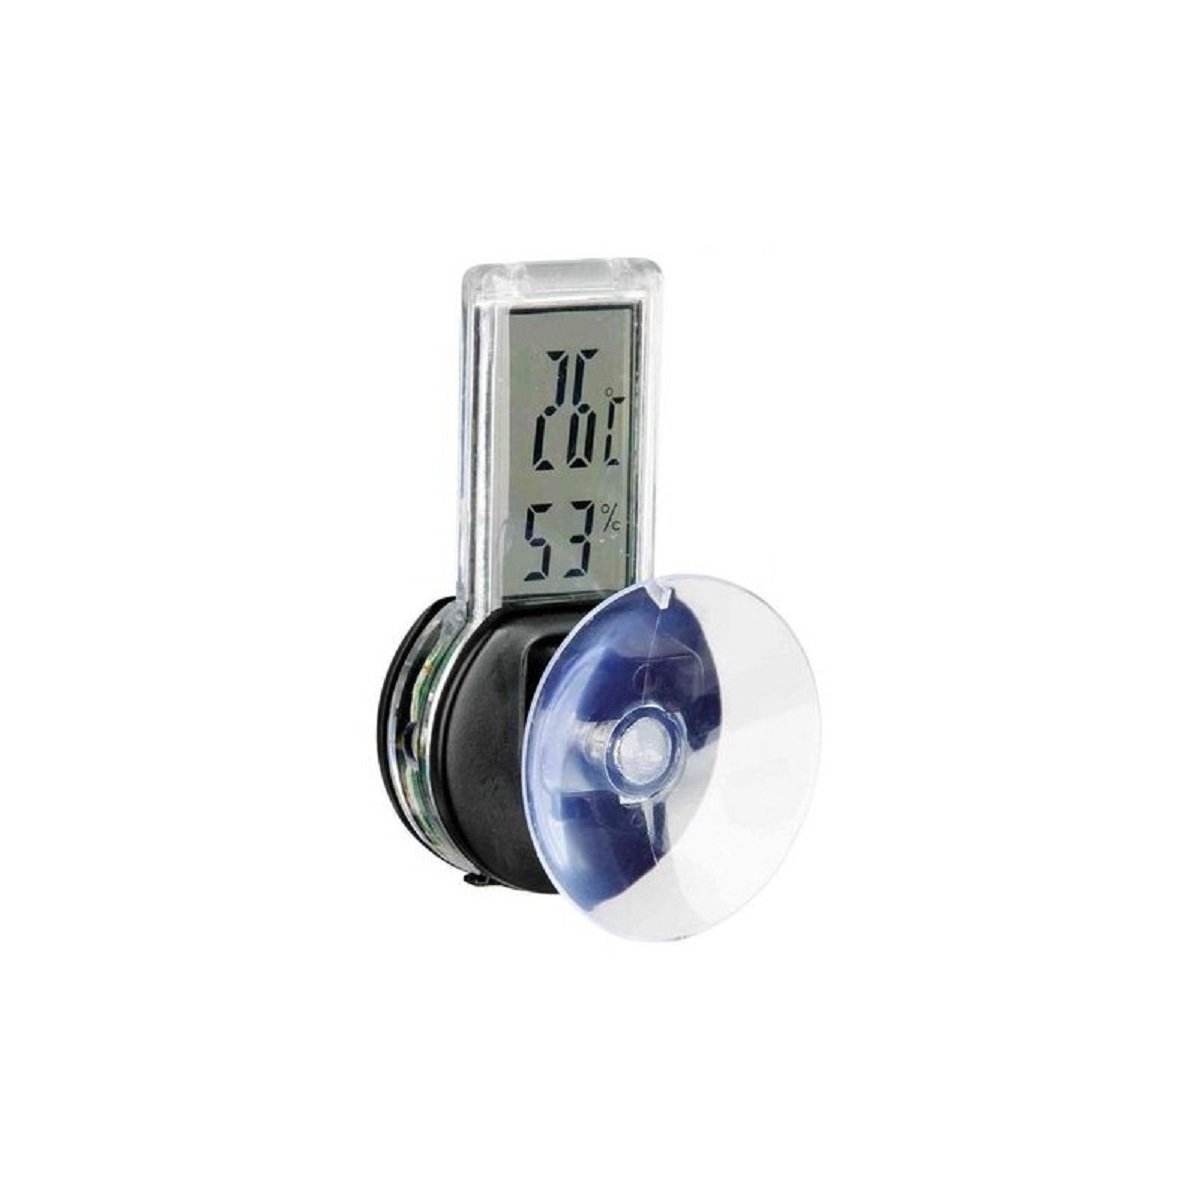 Thermo-/Hygrometer, digital Trixie Reptiland